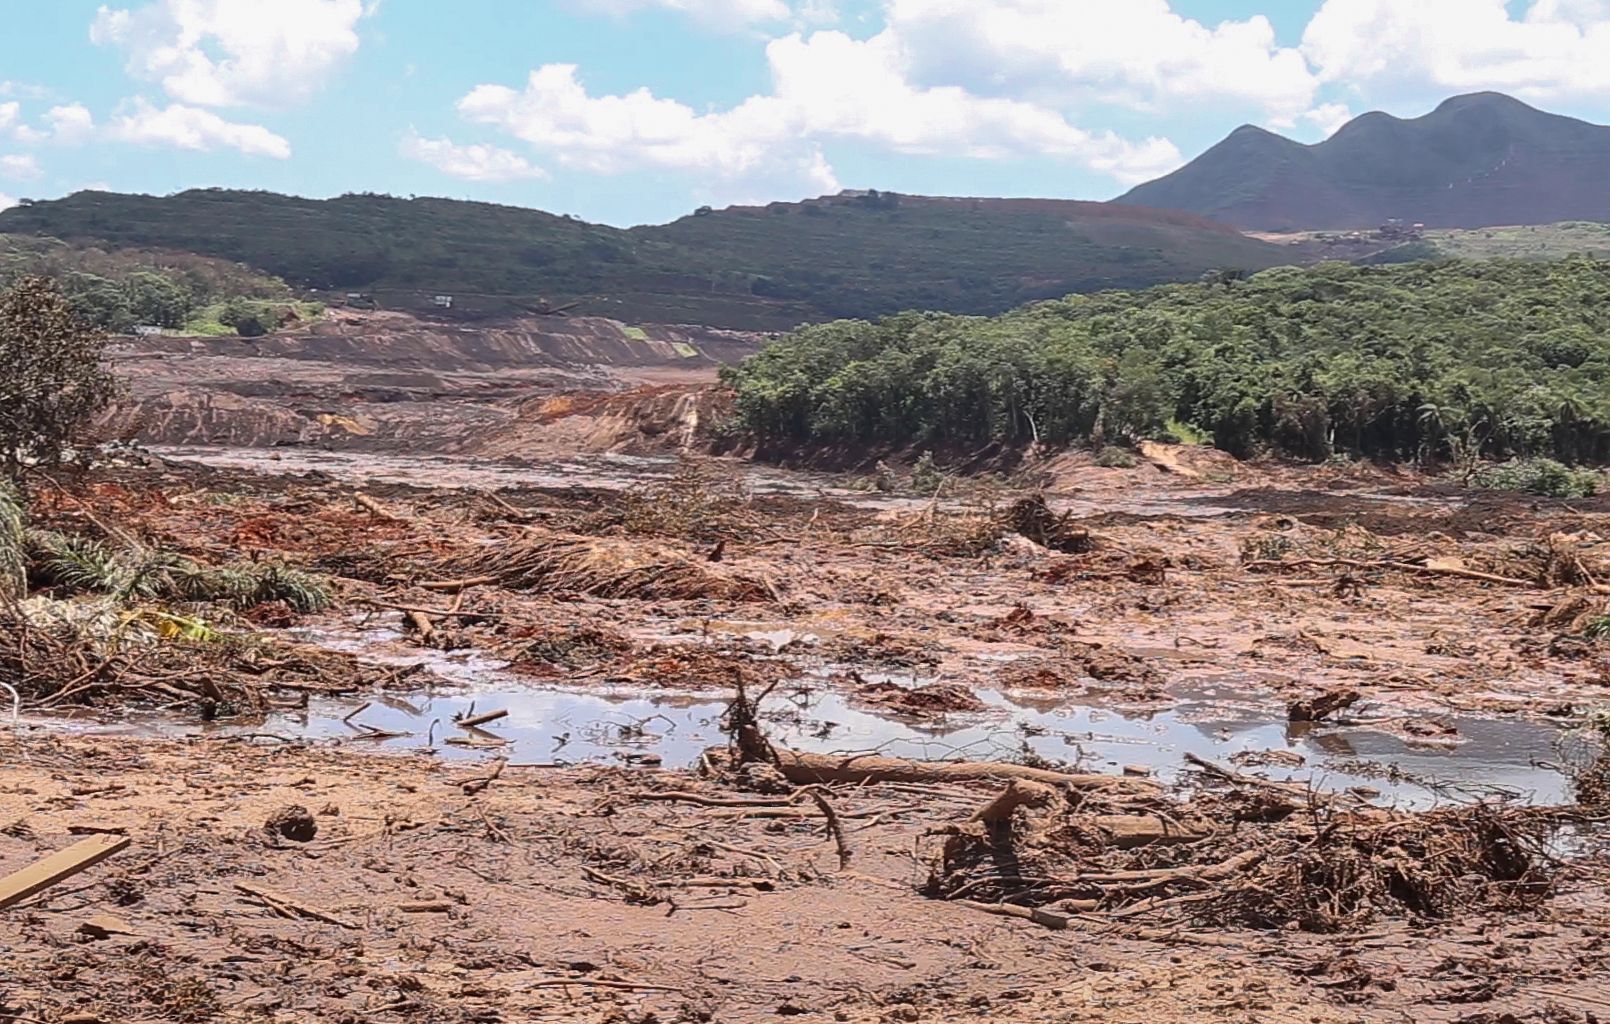 Rompimento da barragem do Córrego do Feijão deixa um rastro de destruição em Brumadinho, Minas Gerais.